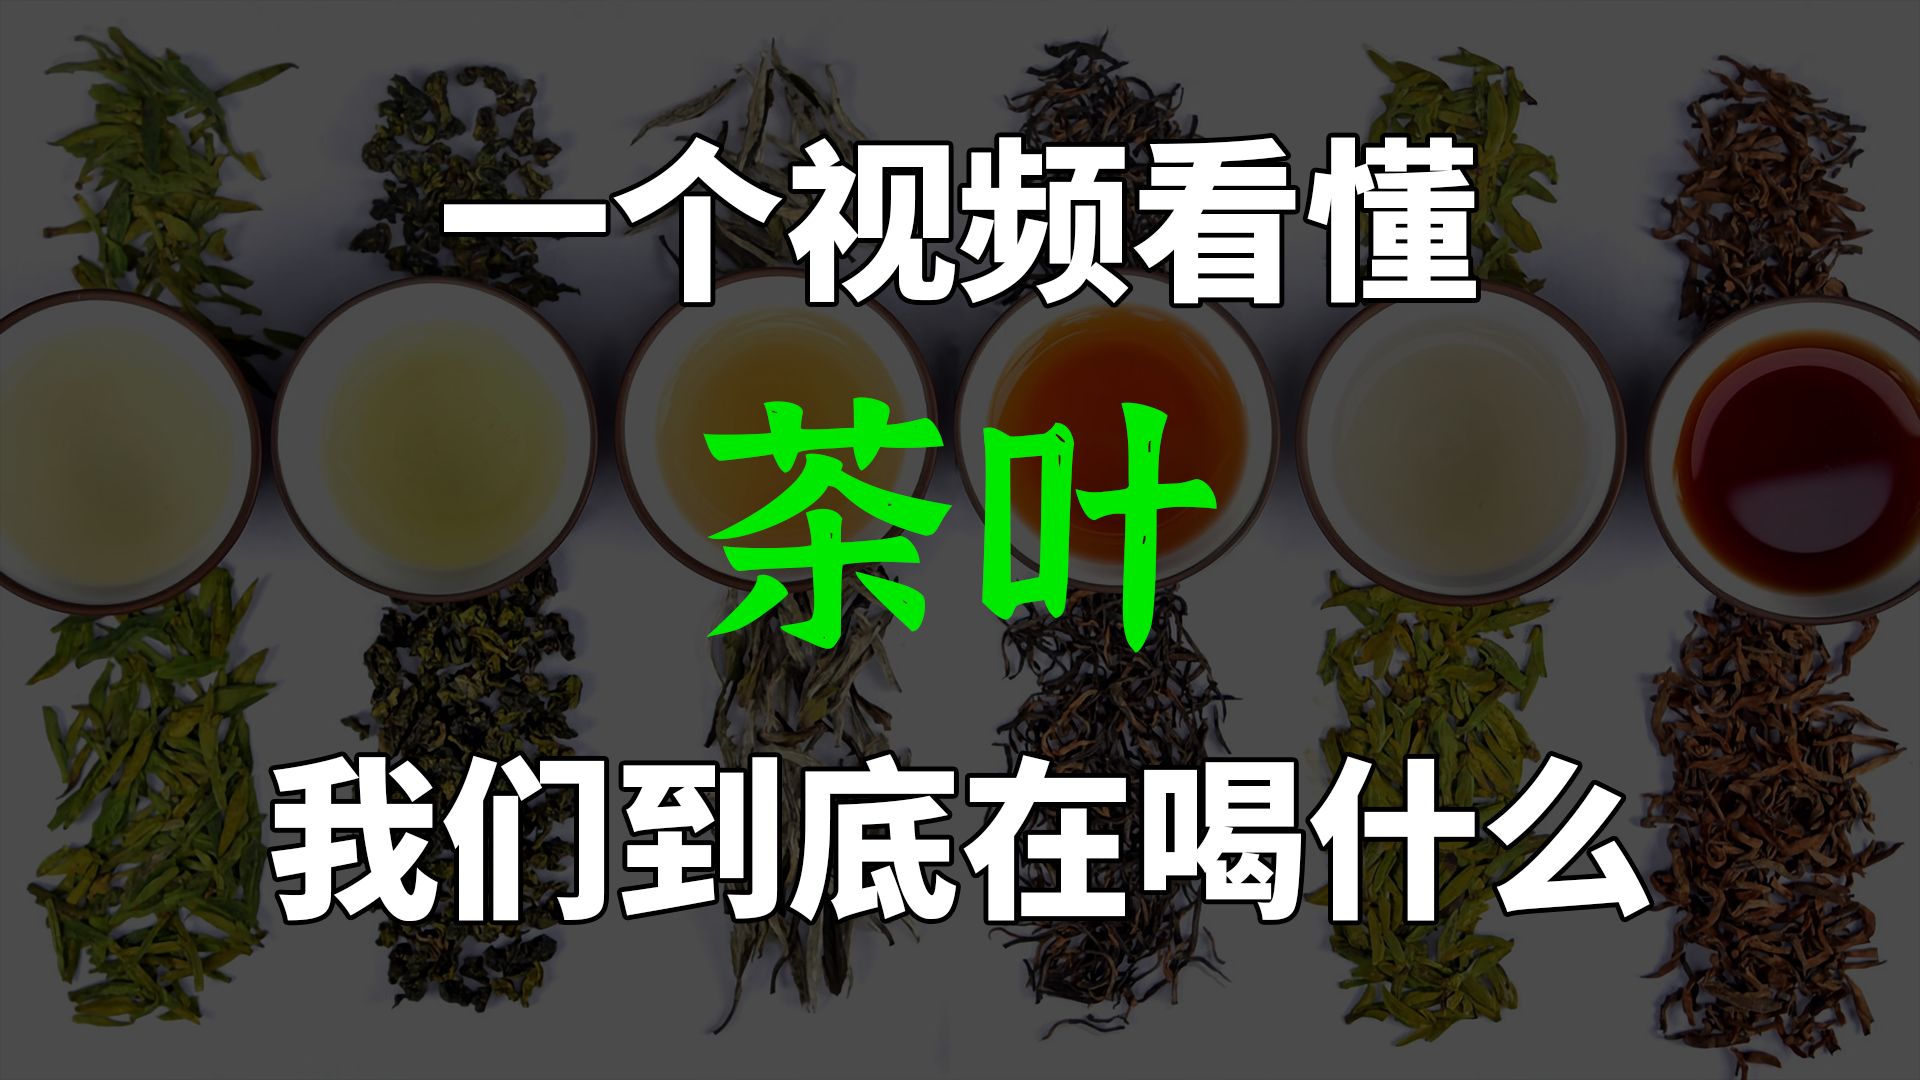 茶叶全解：不同茶有什么区别？我们到底在喝什么？为什么中国没有茶叶巨头？【材料物语】